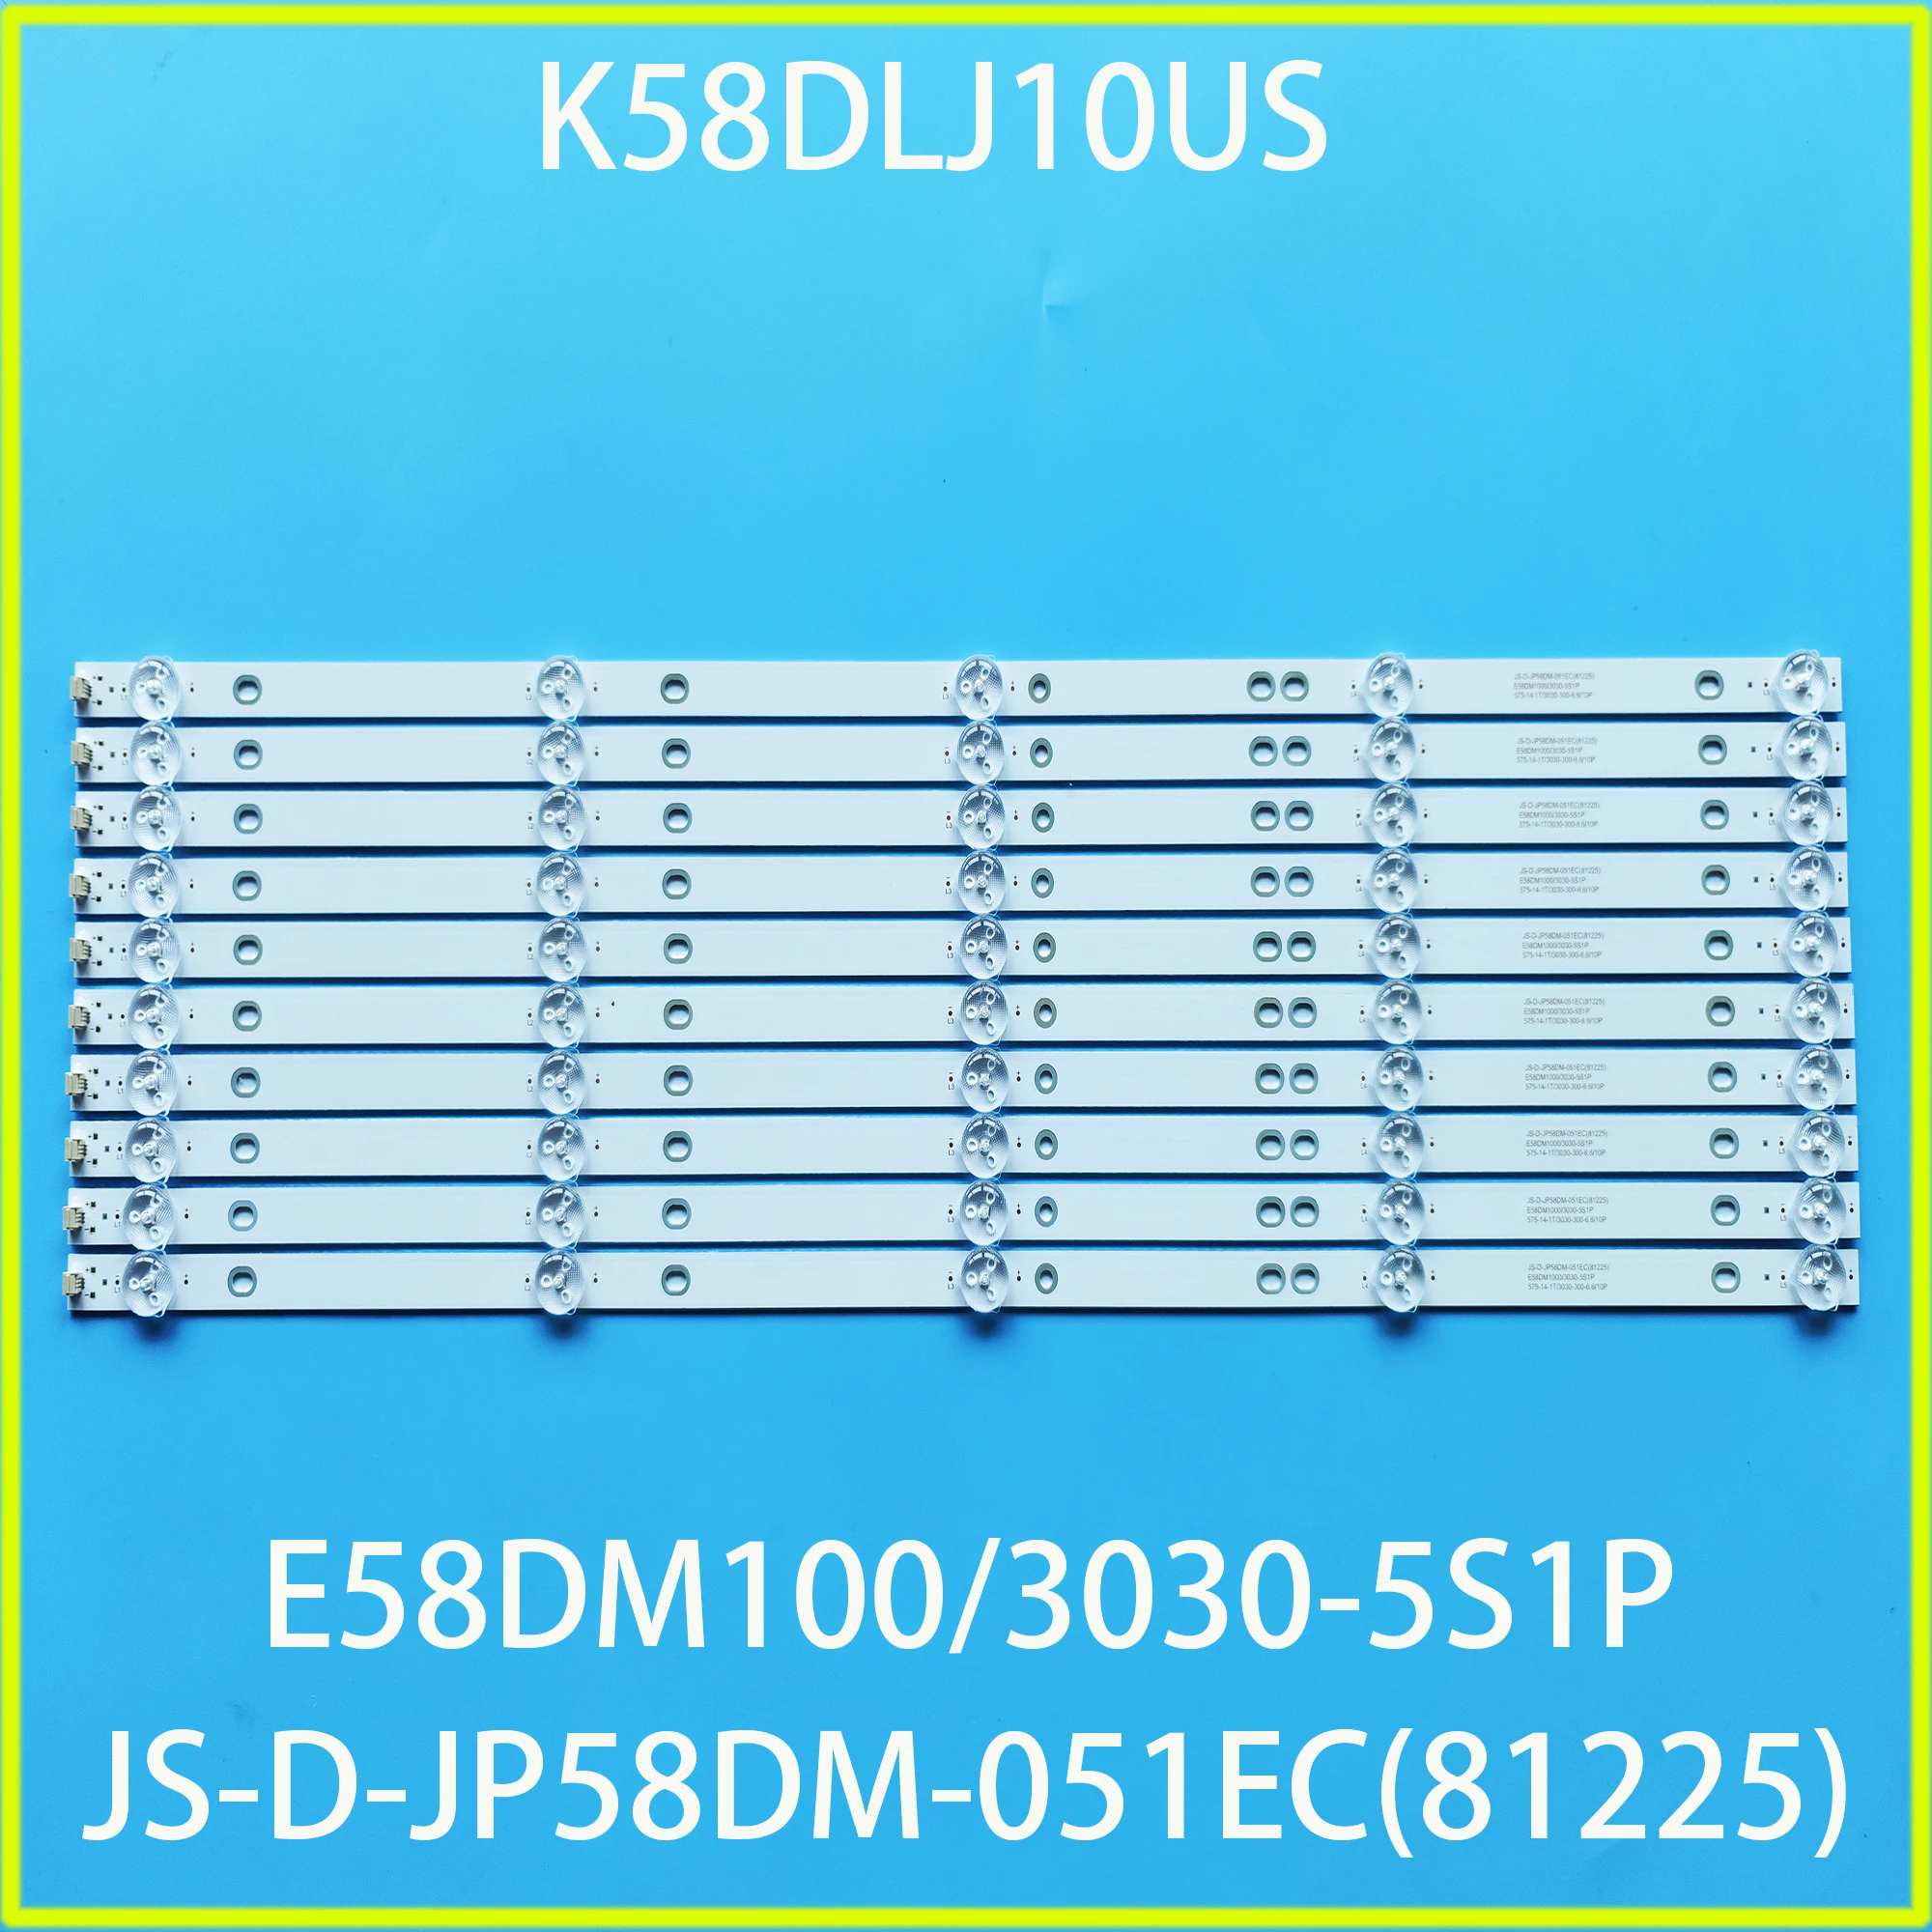 

10pcs LED Strip 5LED for TD K58DLJ10US polaroid 58 tvled584k01 JS-D-JP58DM-051EC(81225) E58DM100 3030-5S1P